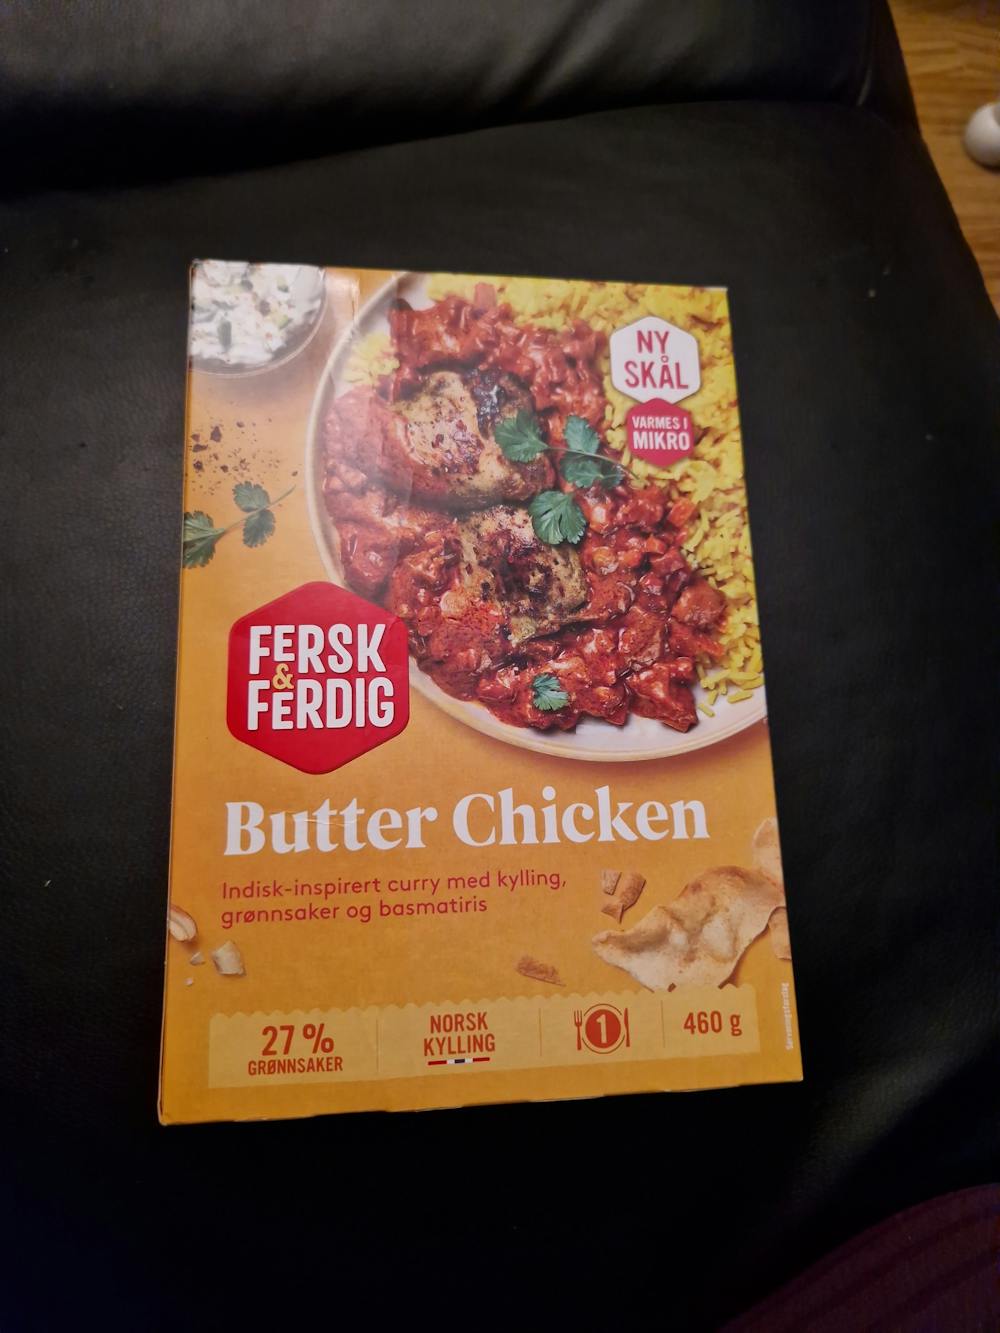 Butter Chicken, Fersk & Ferdig